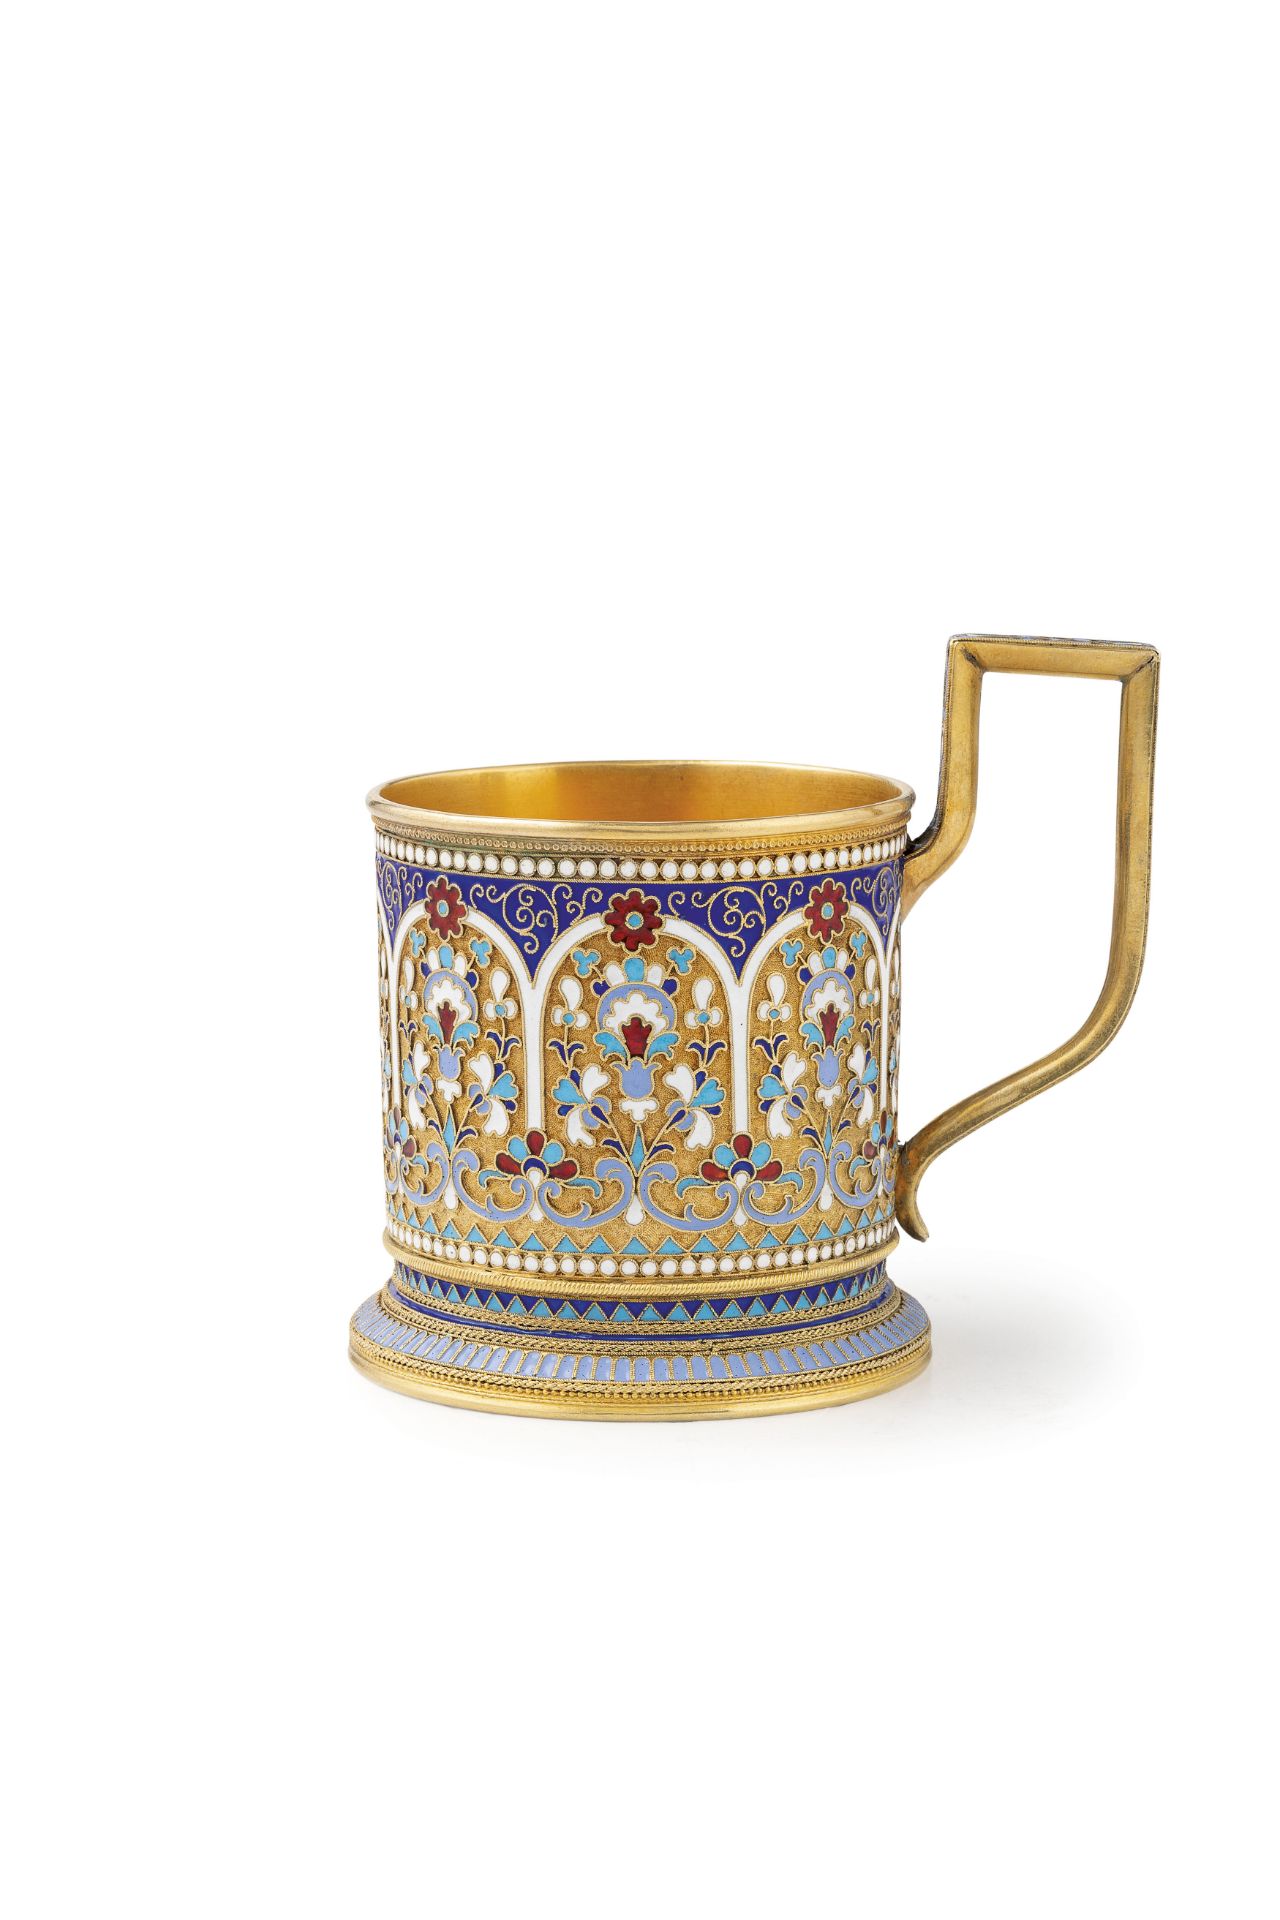 TEA CUP HOLDER IN ARGENTO DORATO E SMALTI, MOSCA, 1896-1908, ORAFO V. AKIMOV